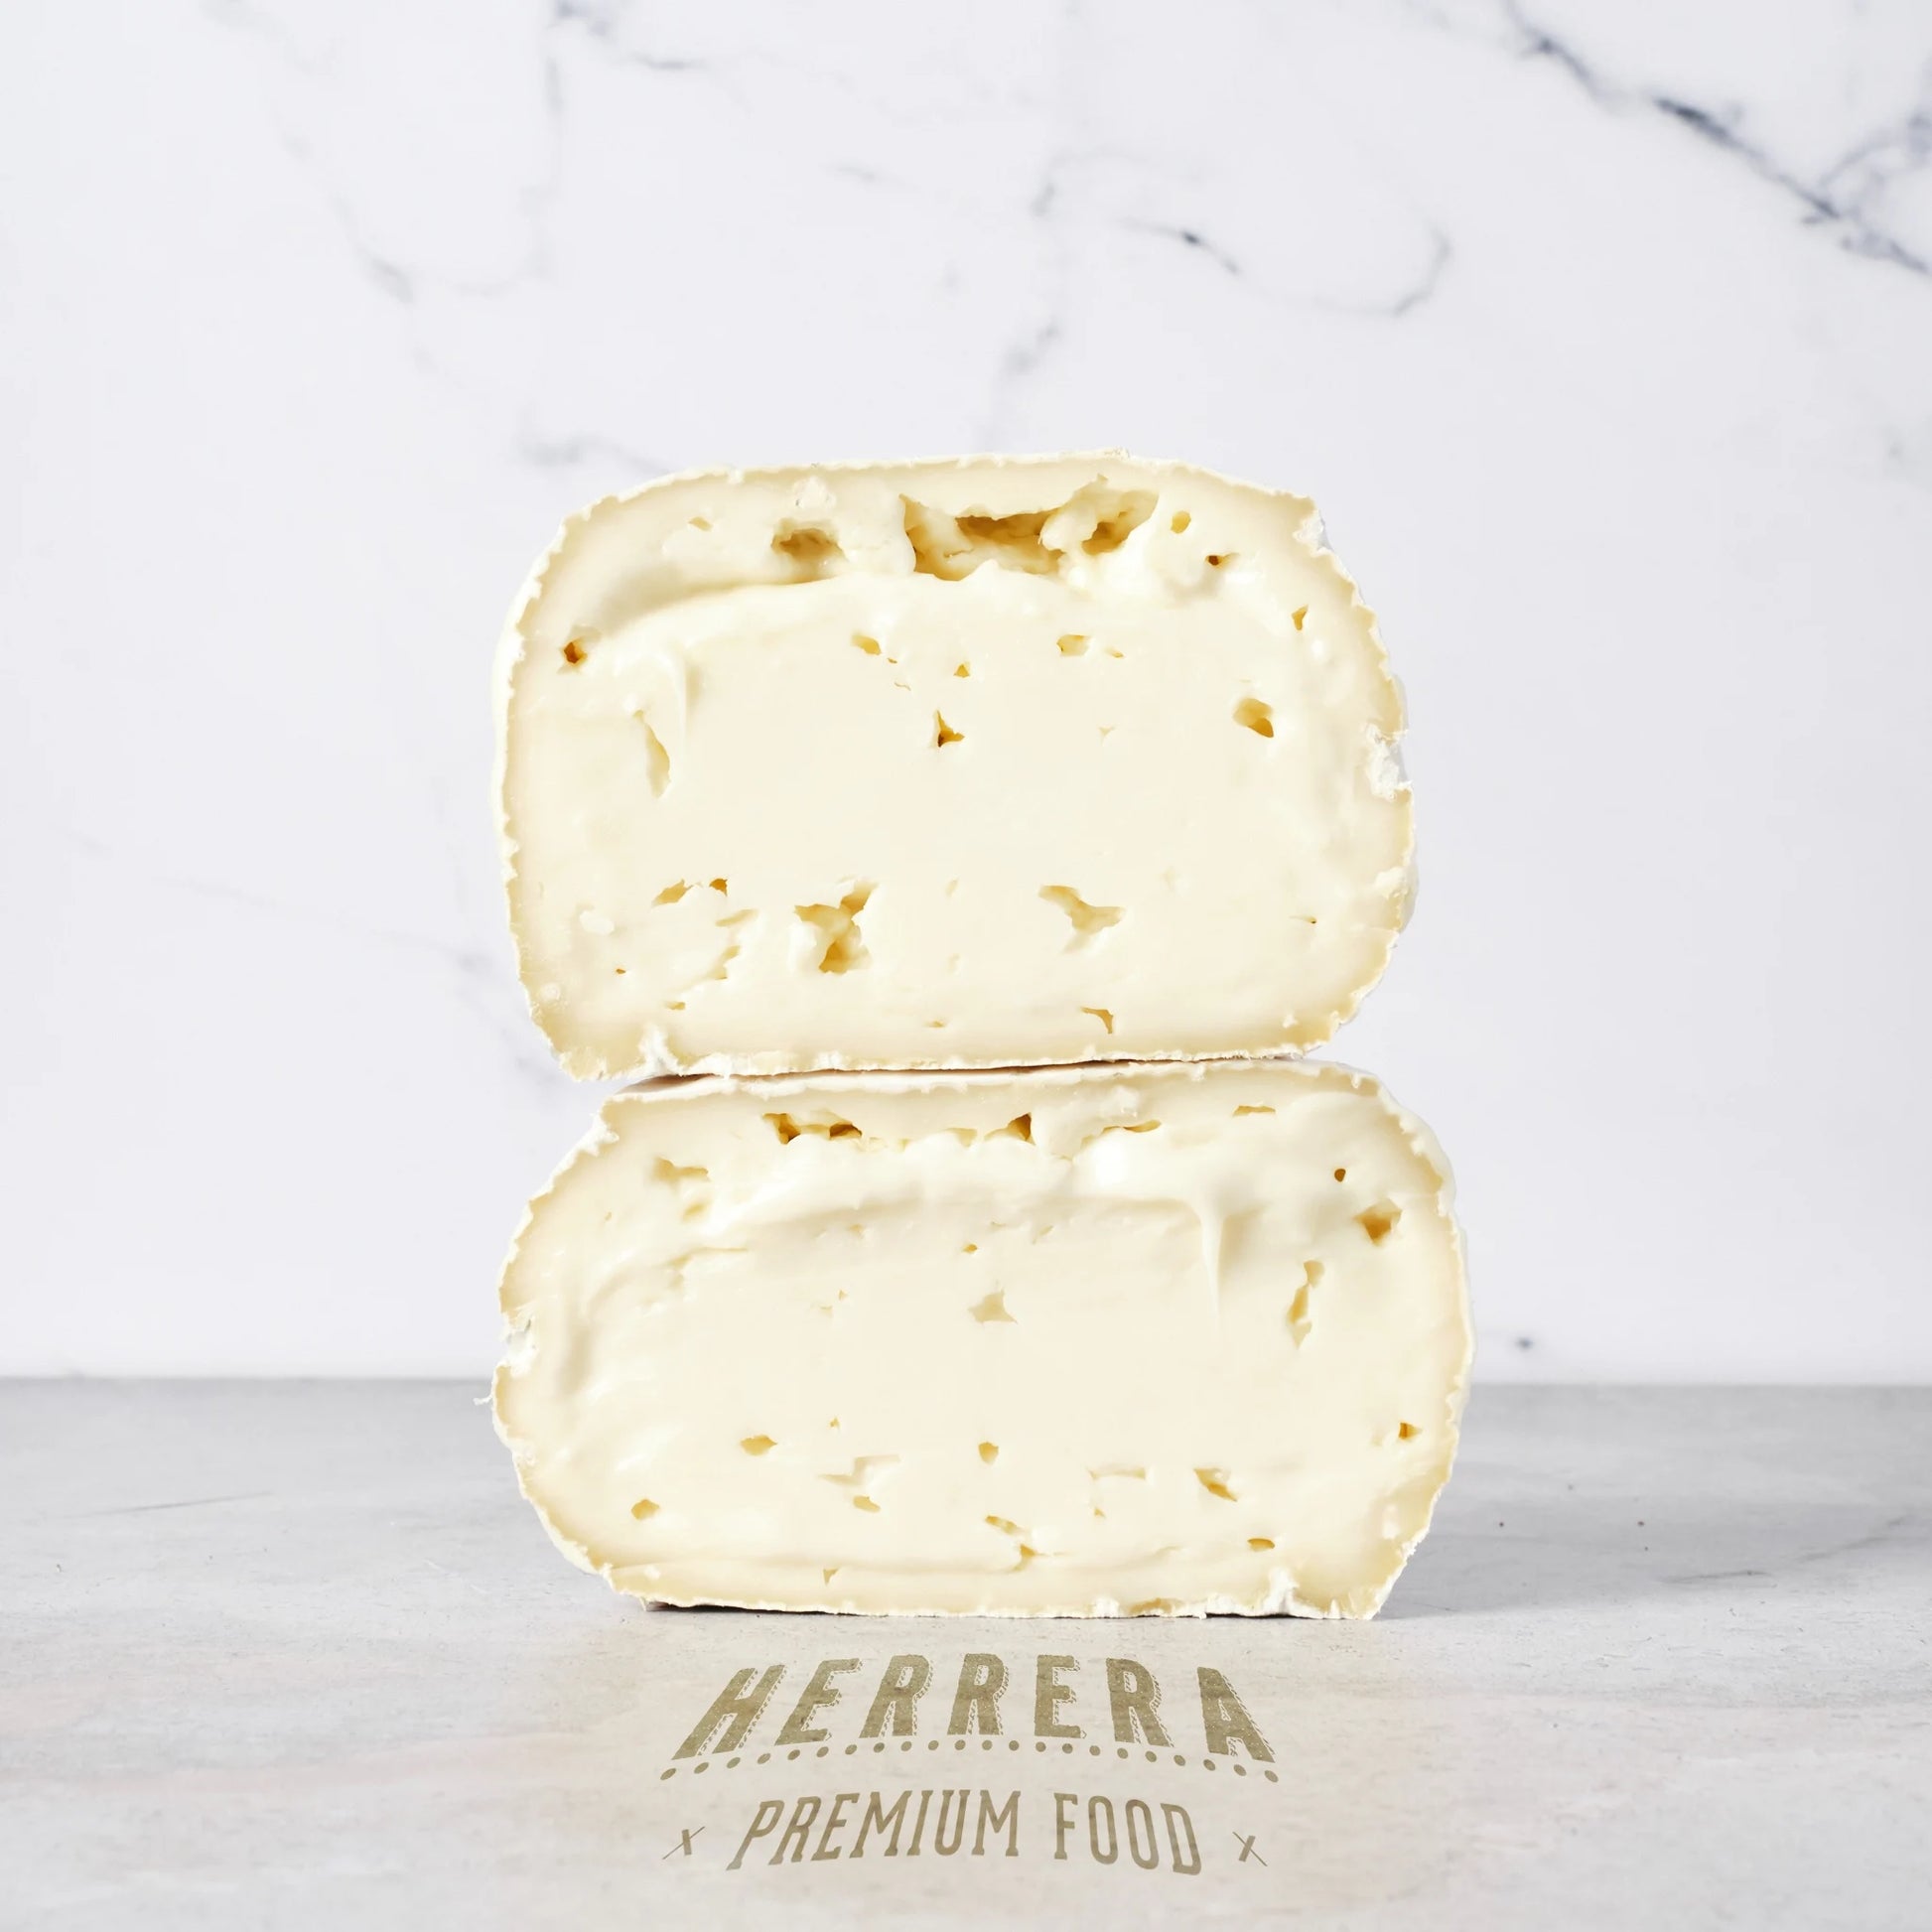  Mantecaso Cañarejal: Un hermoso queso de pasta blanda, con una corteza fina y cremosa.